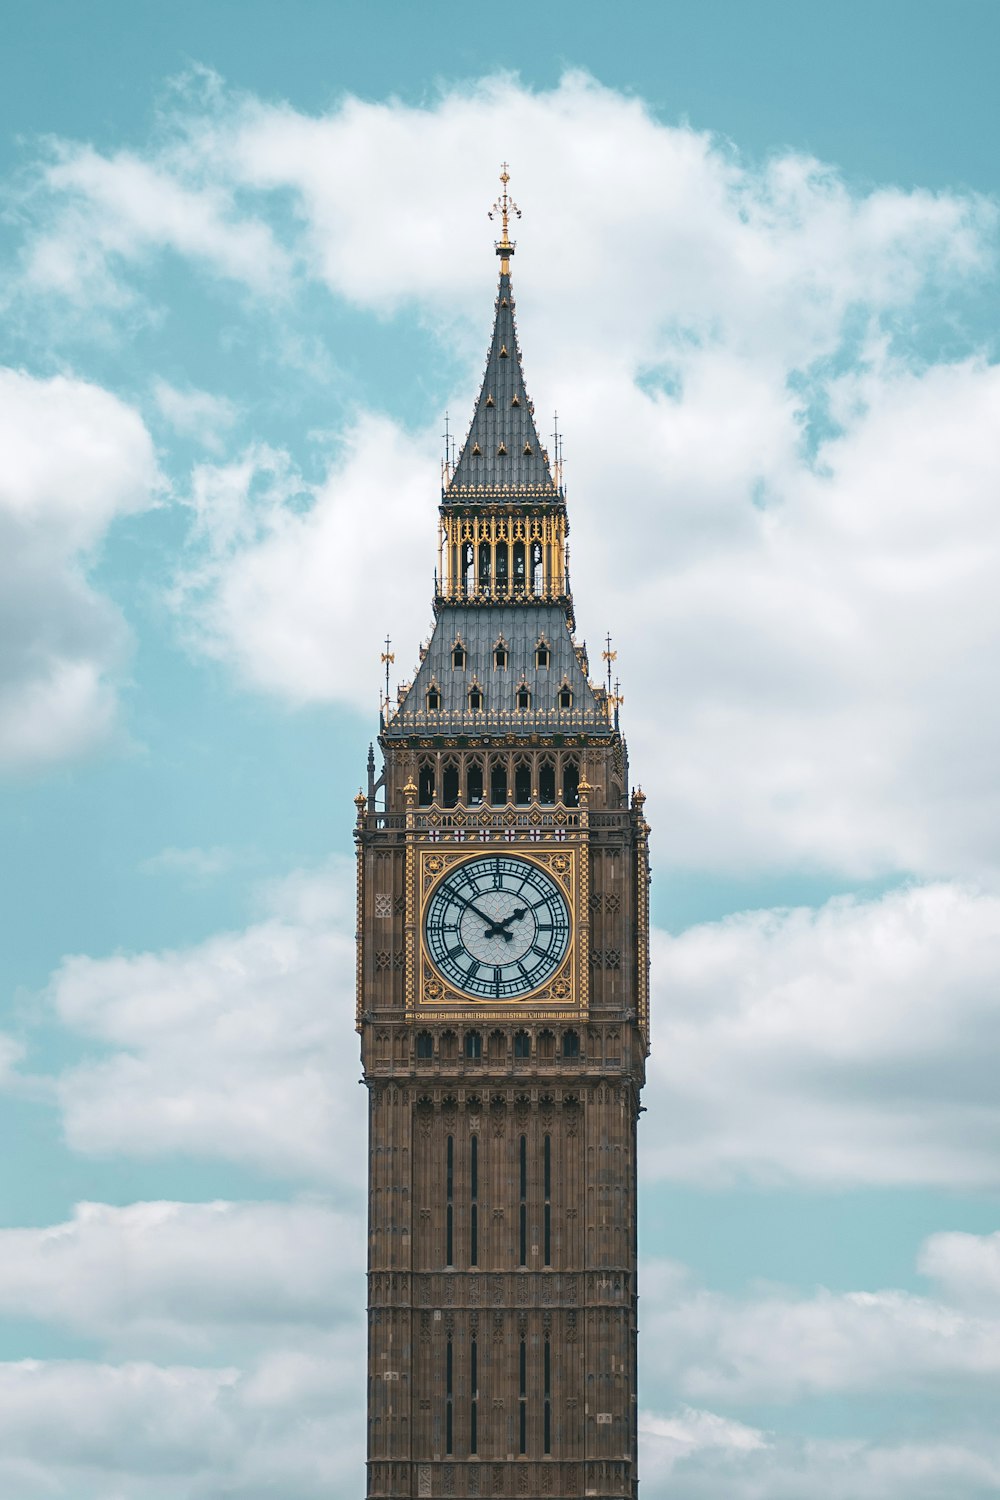 a clock on Big Ben